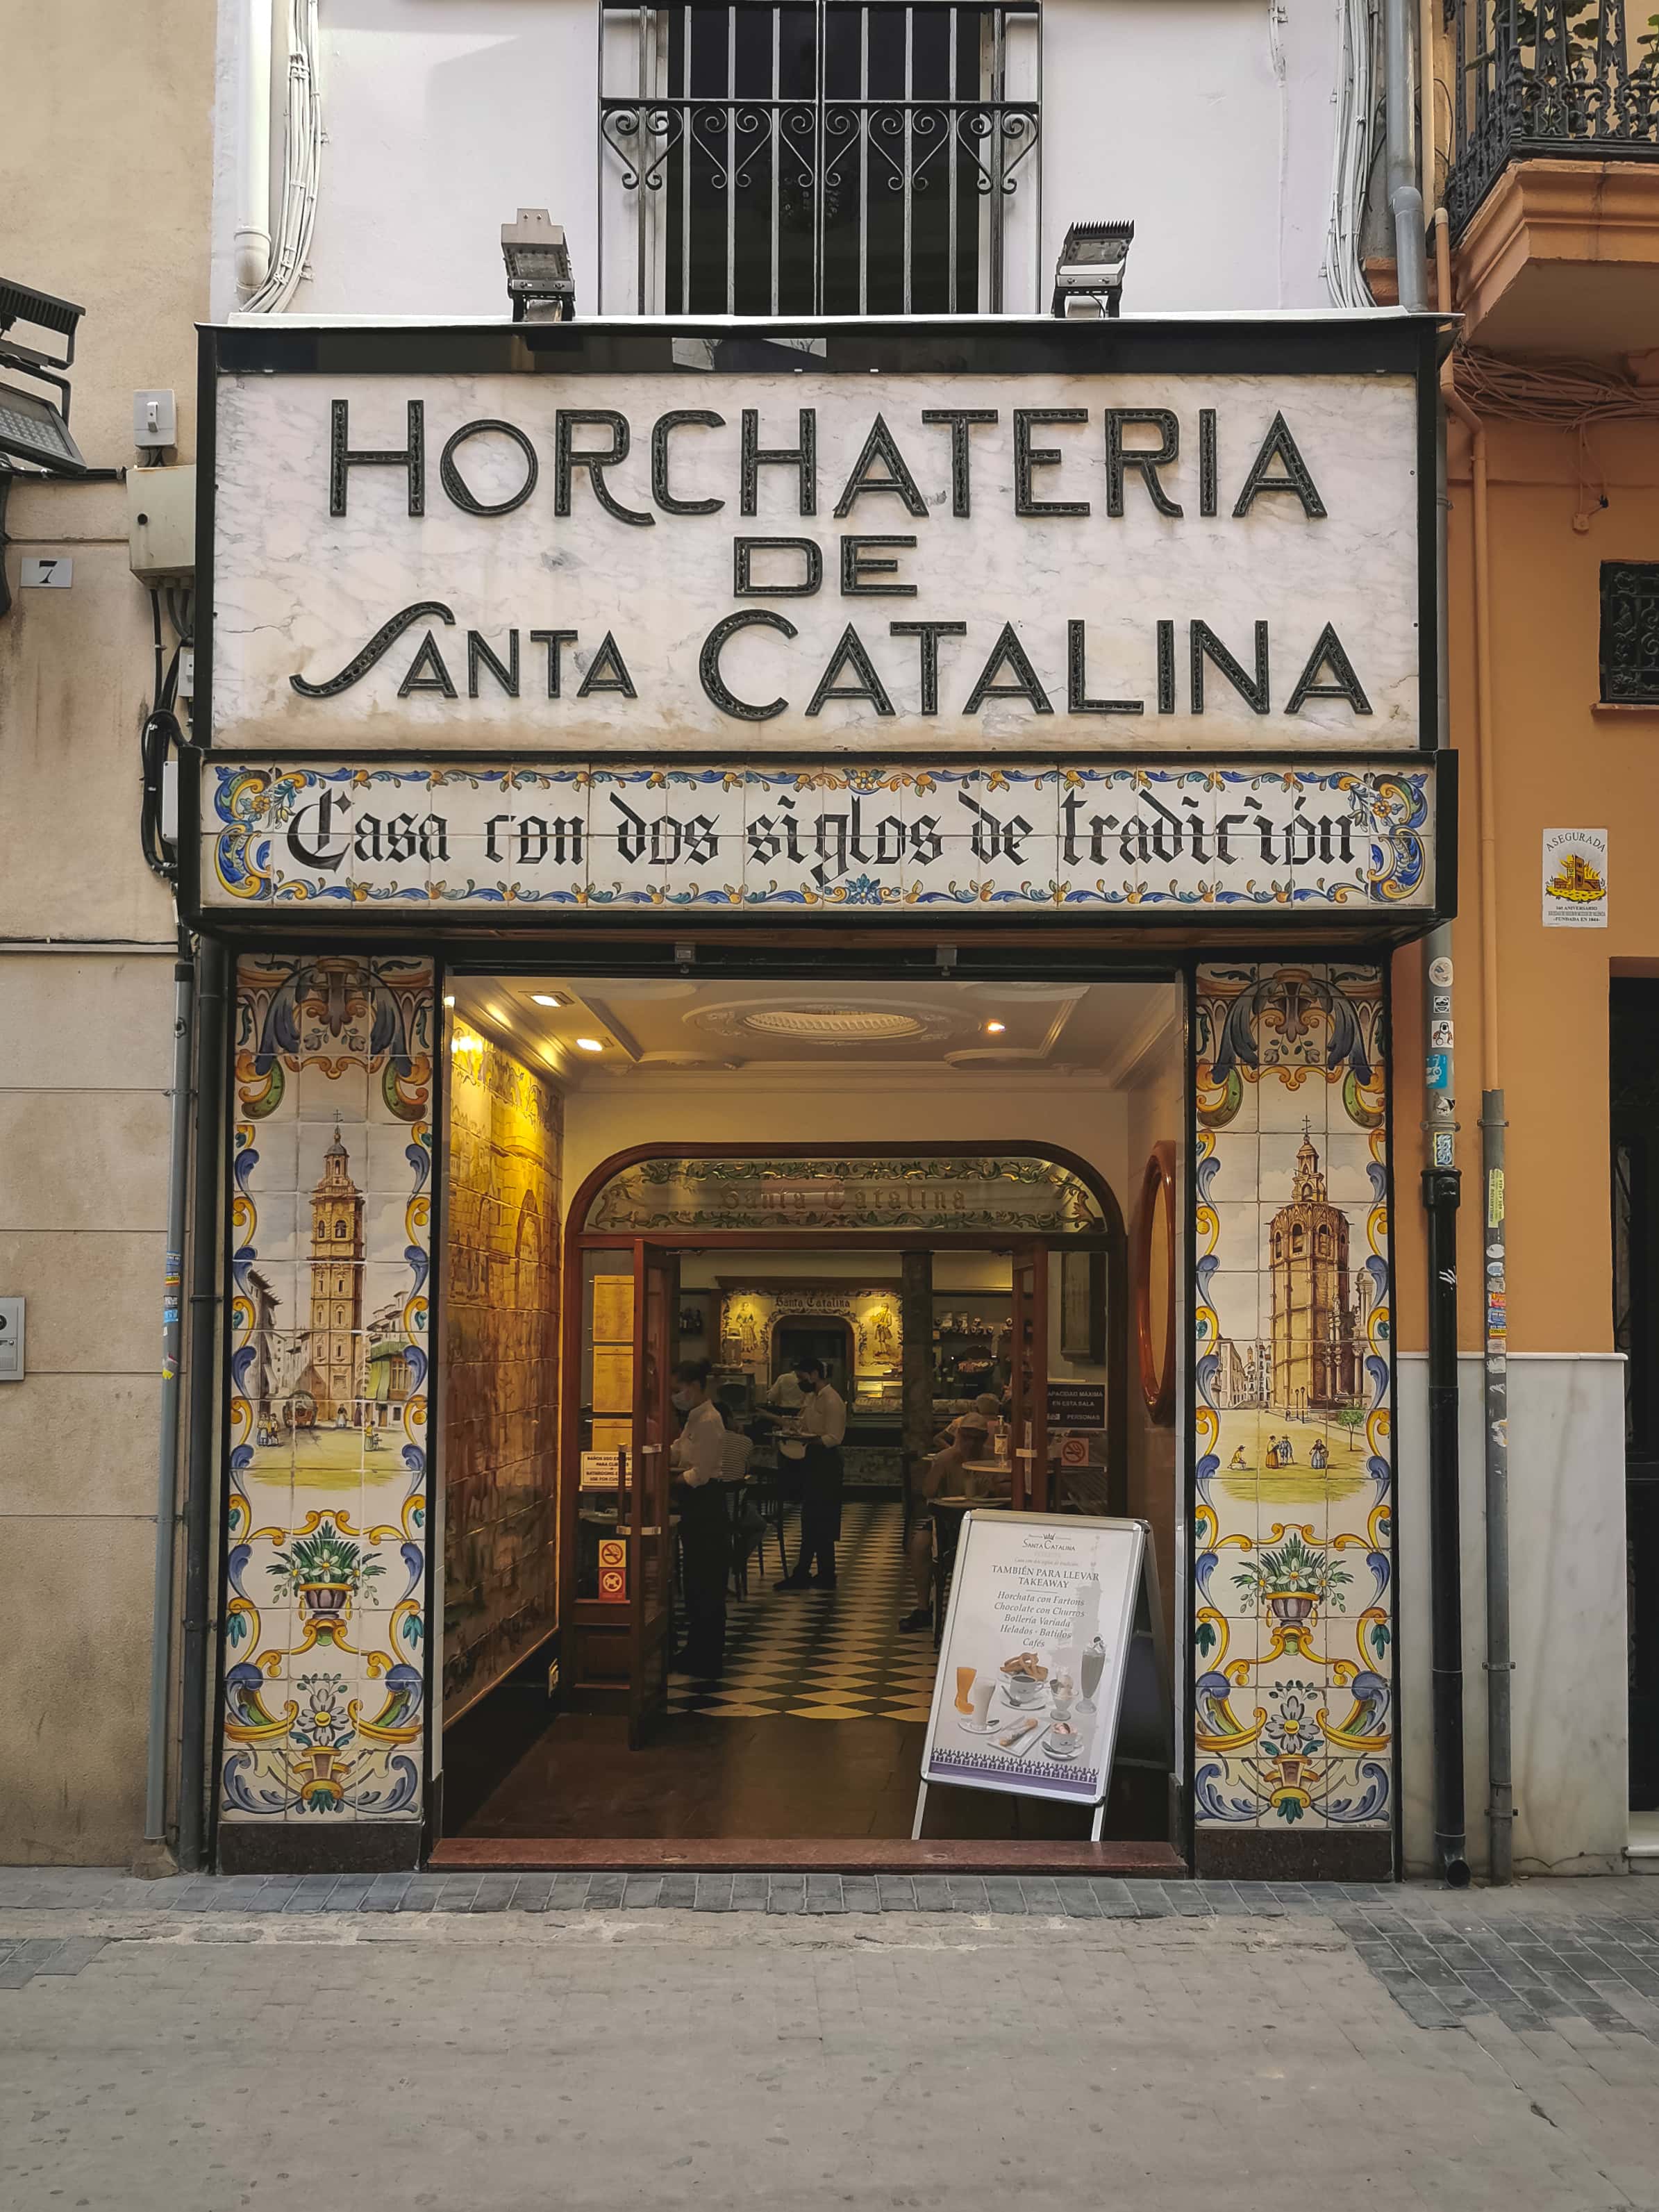 Der Eingang zur Horchateria de Santa Catalina